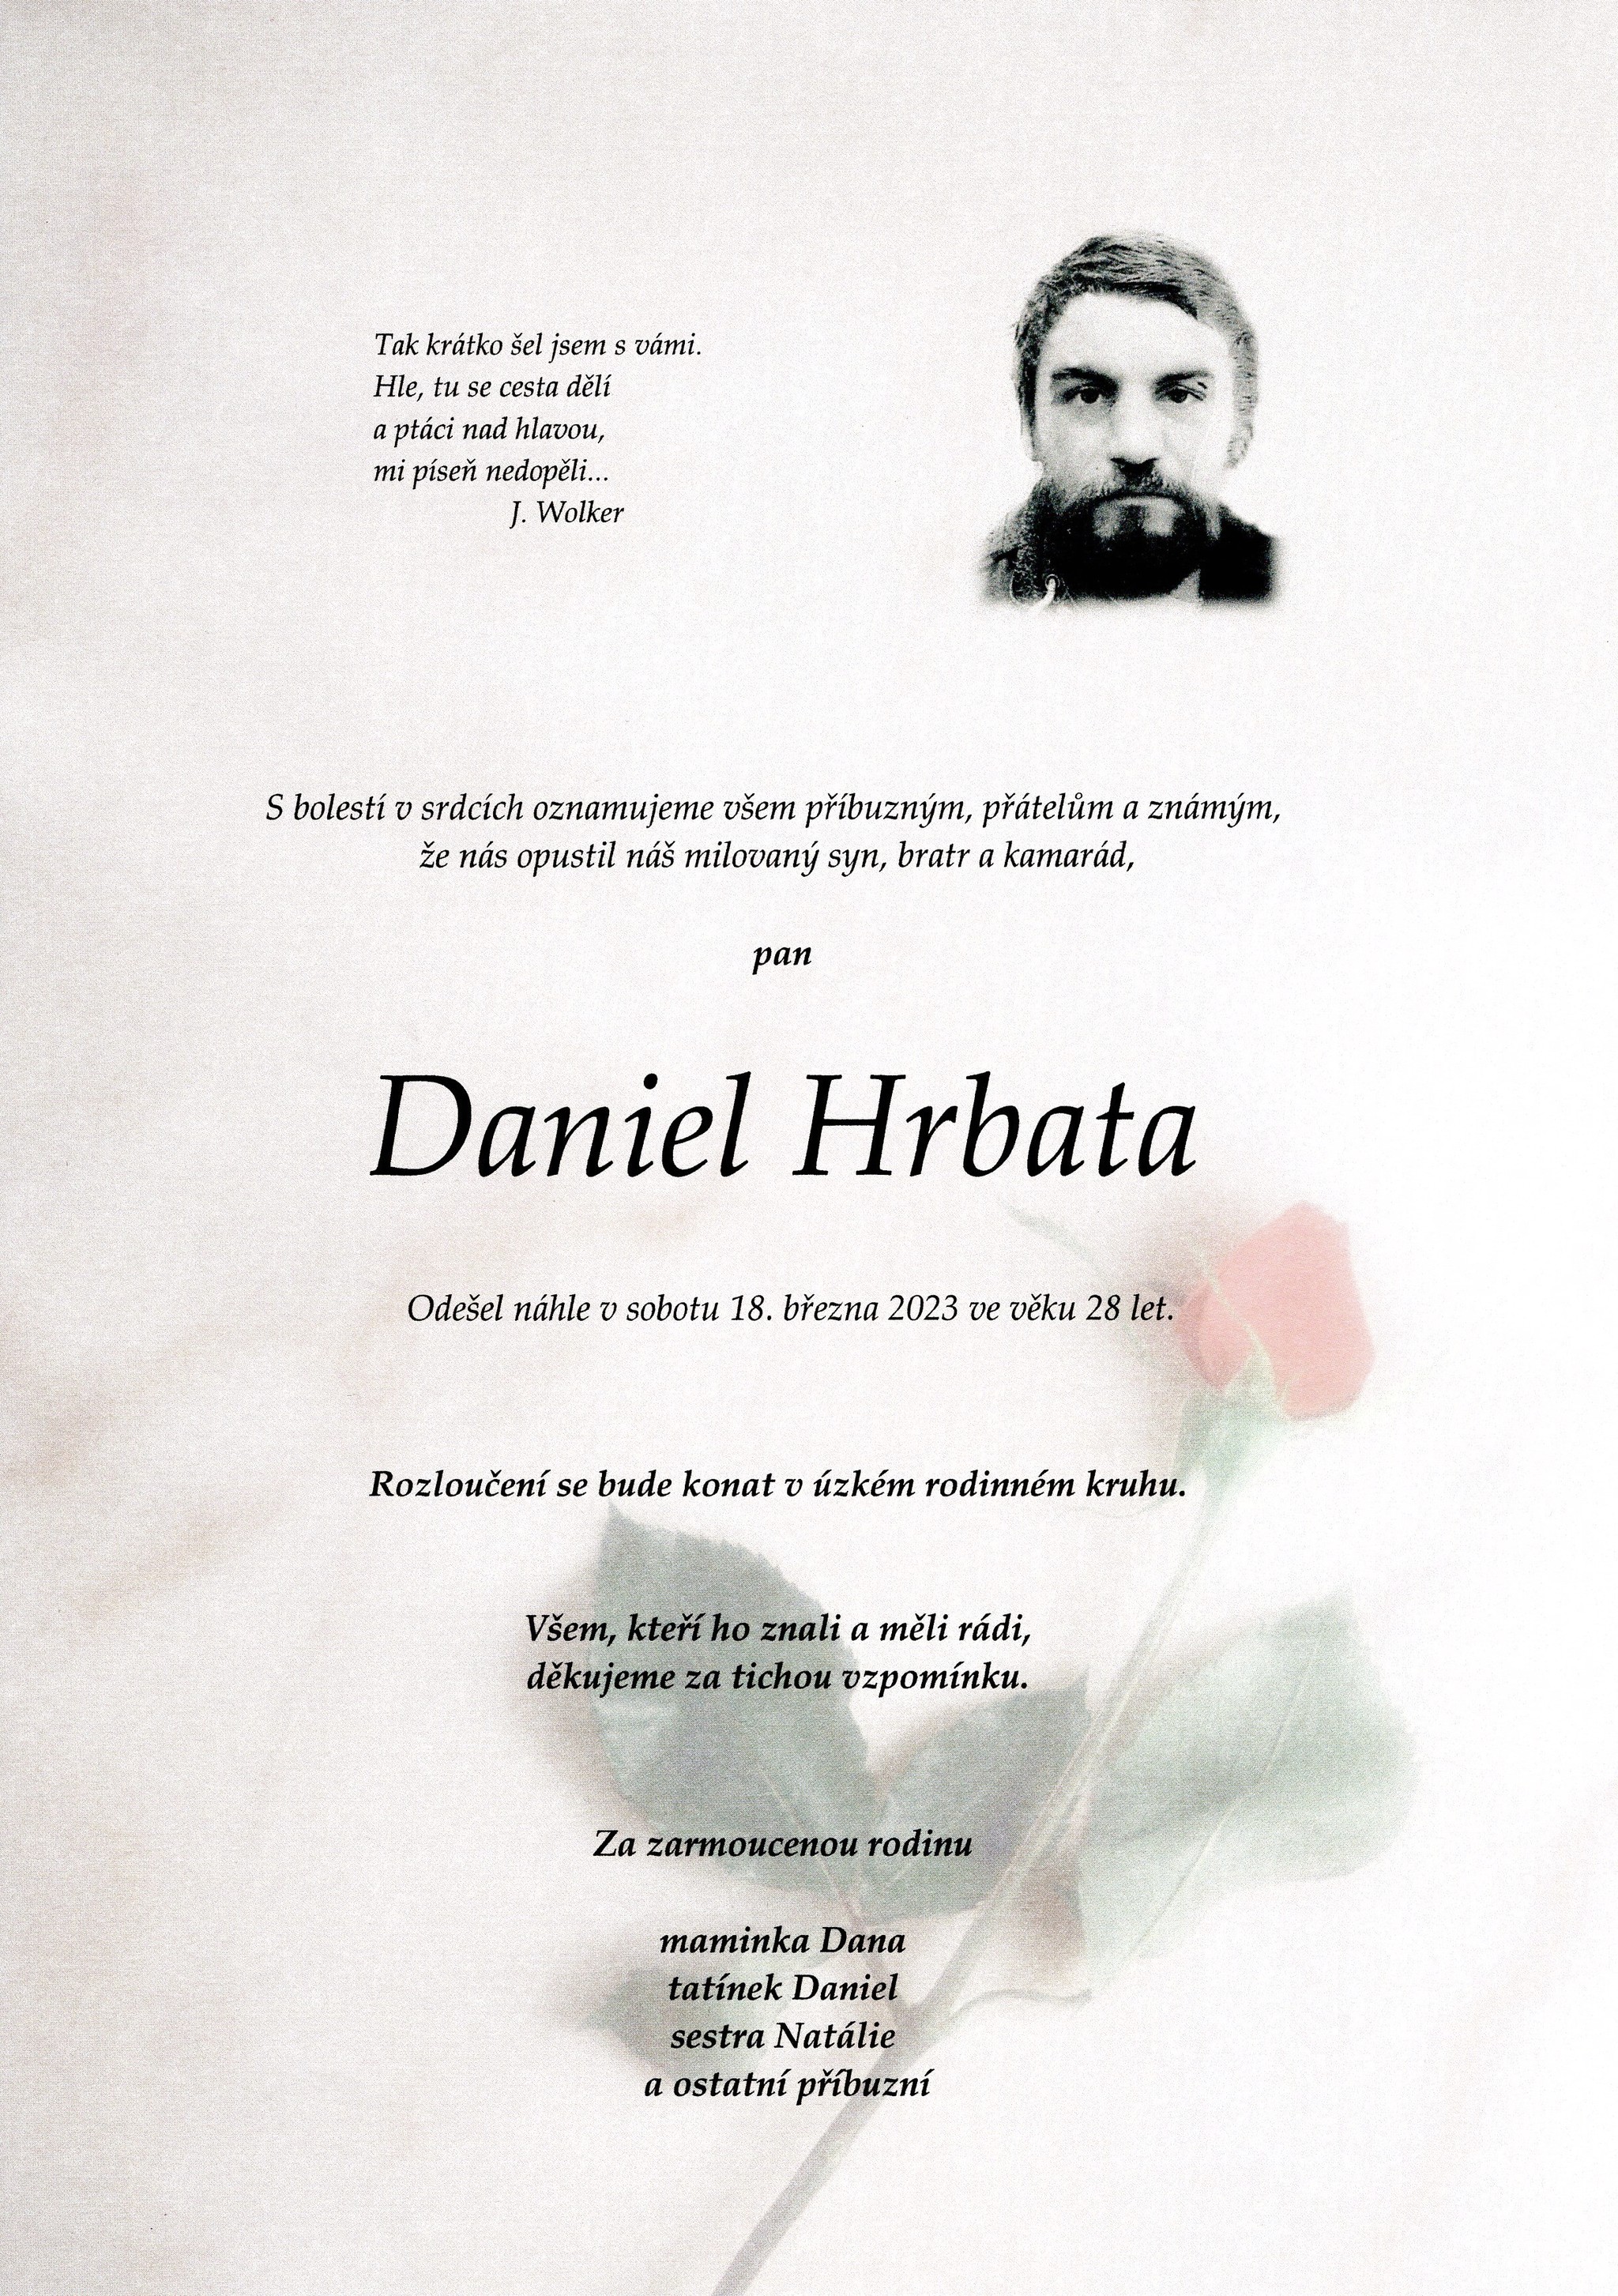 Daniel Hrbata